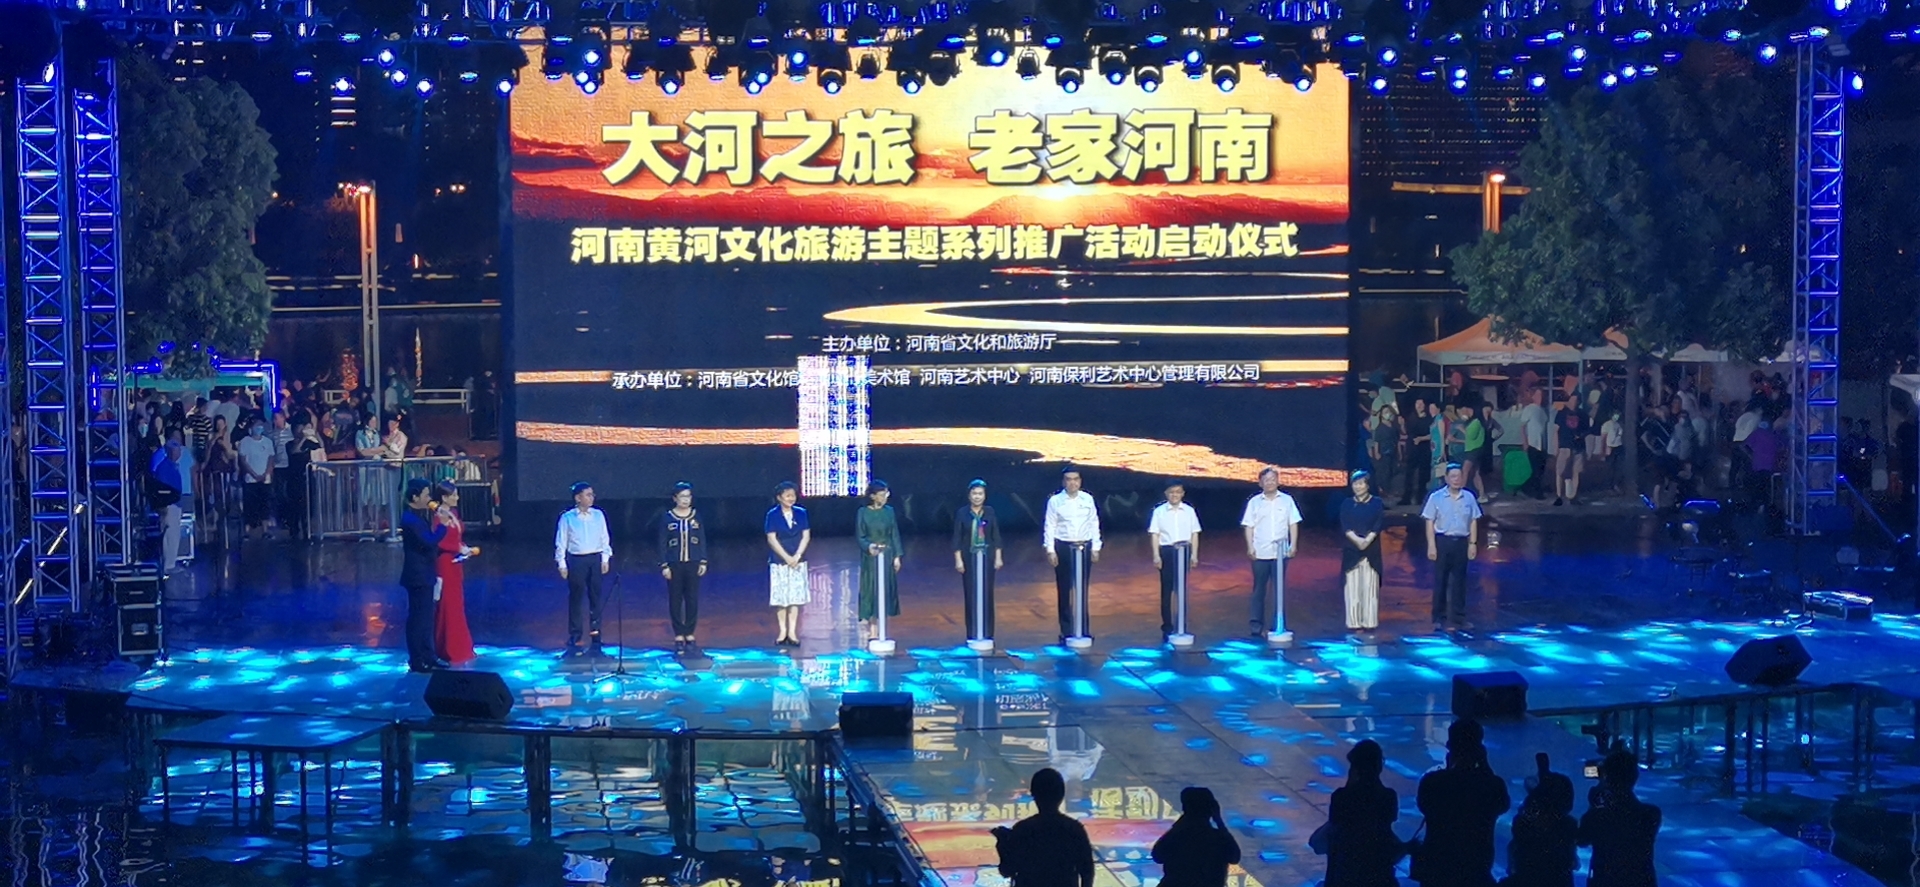 打响黄河文旅品牌 河南省发布沿黄十大文旅主题线路